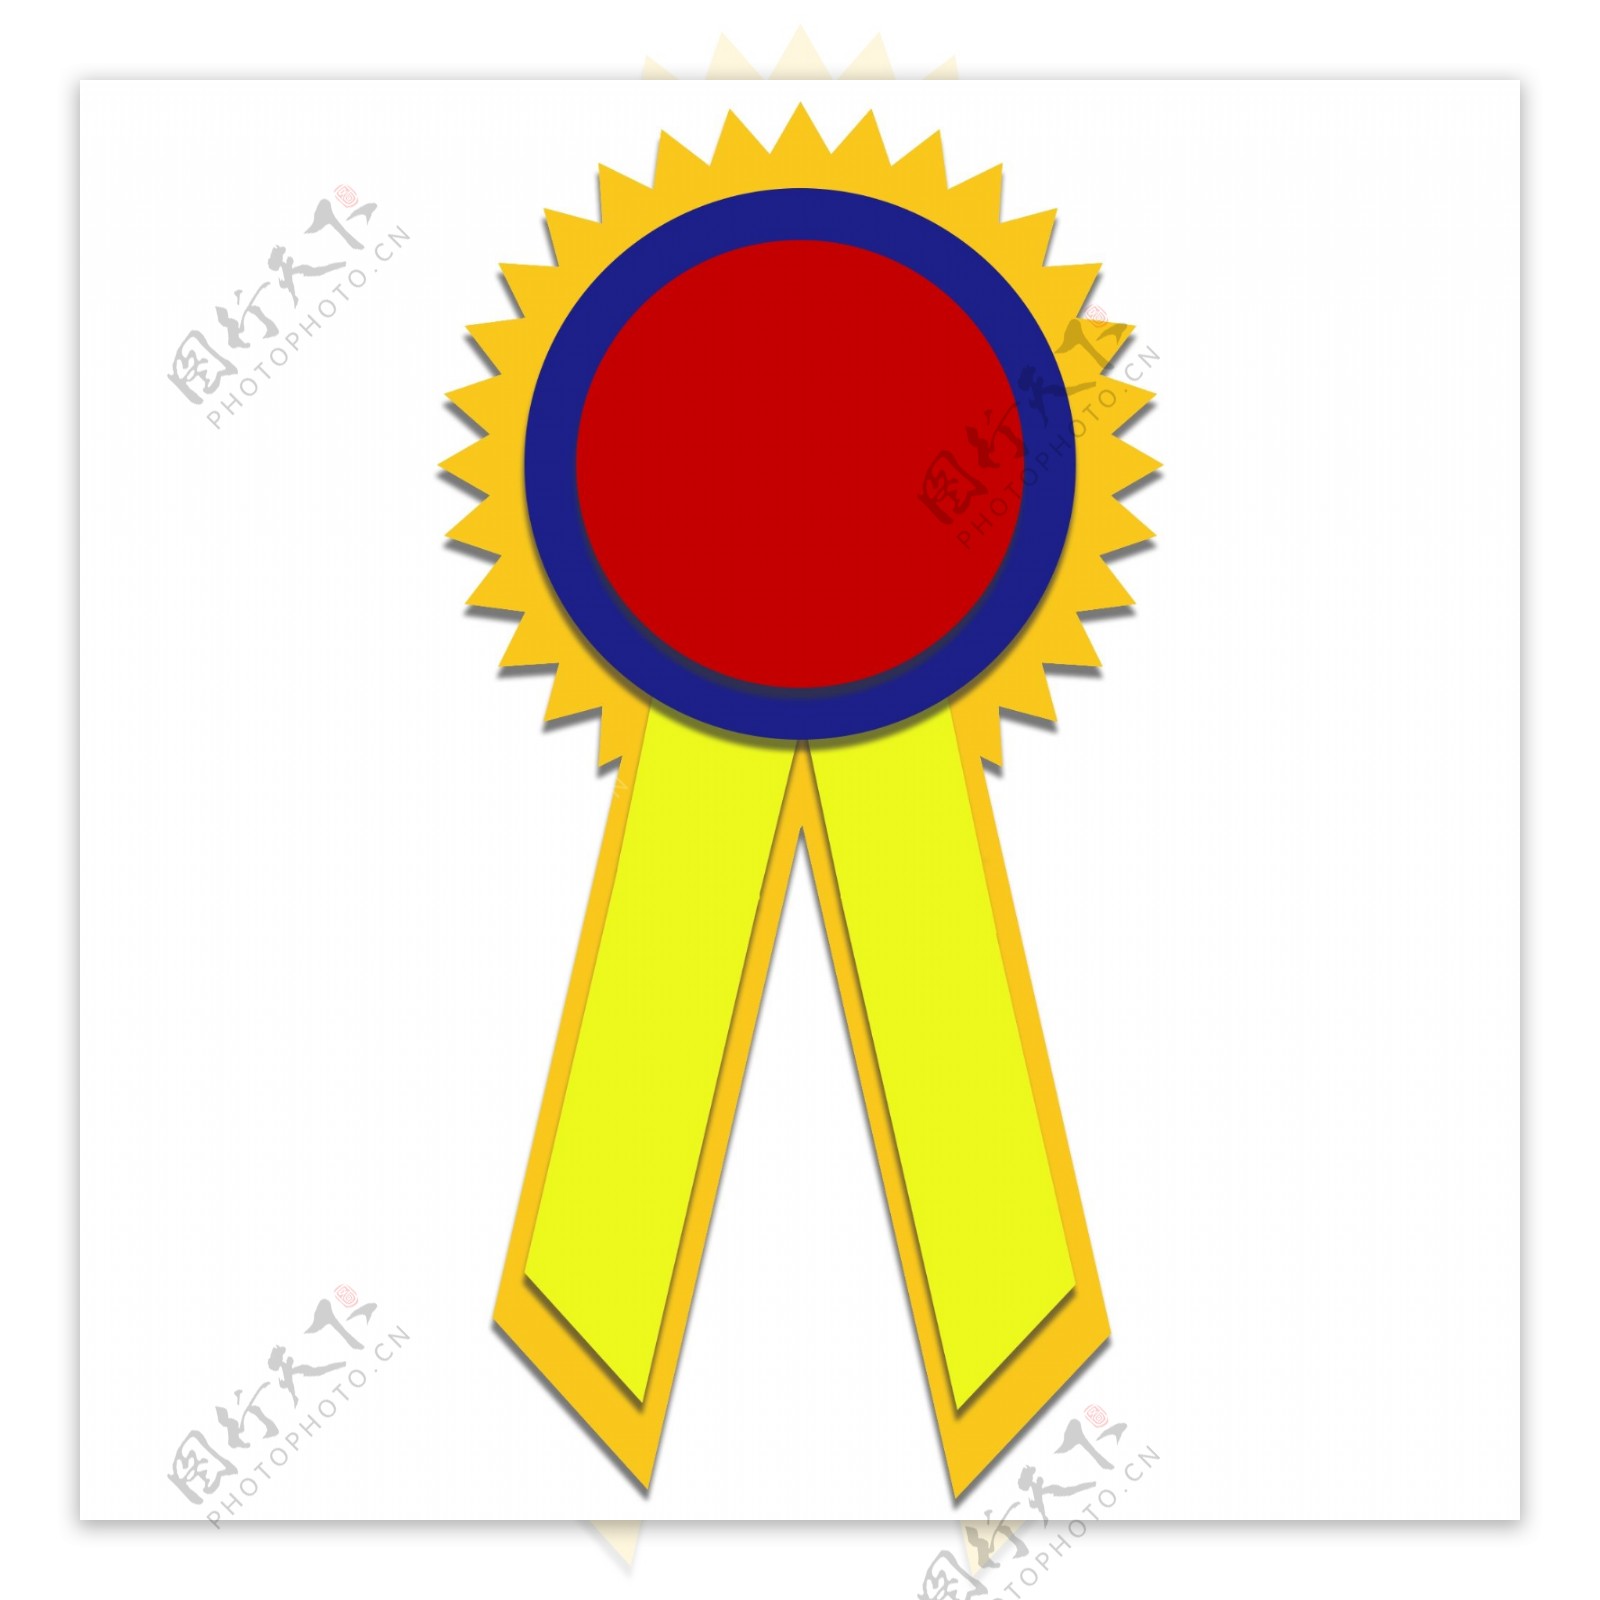 红黄蓝撞色颁奖勋章立体UI图标